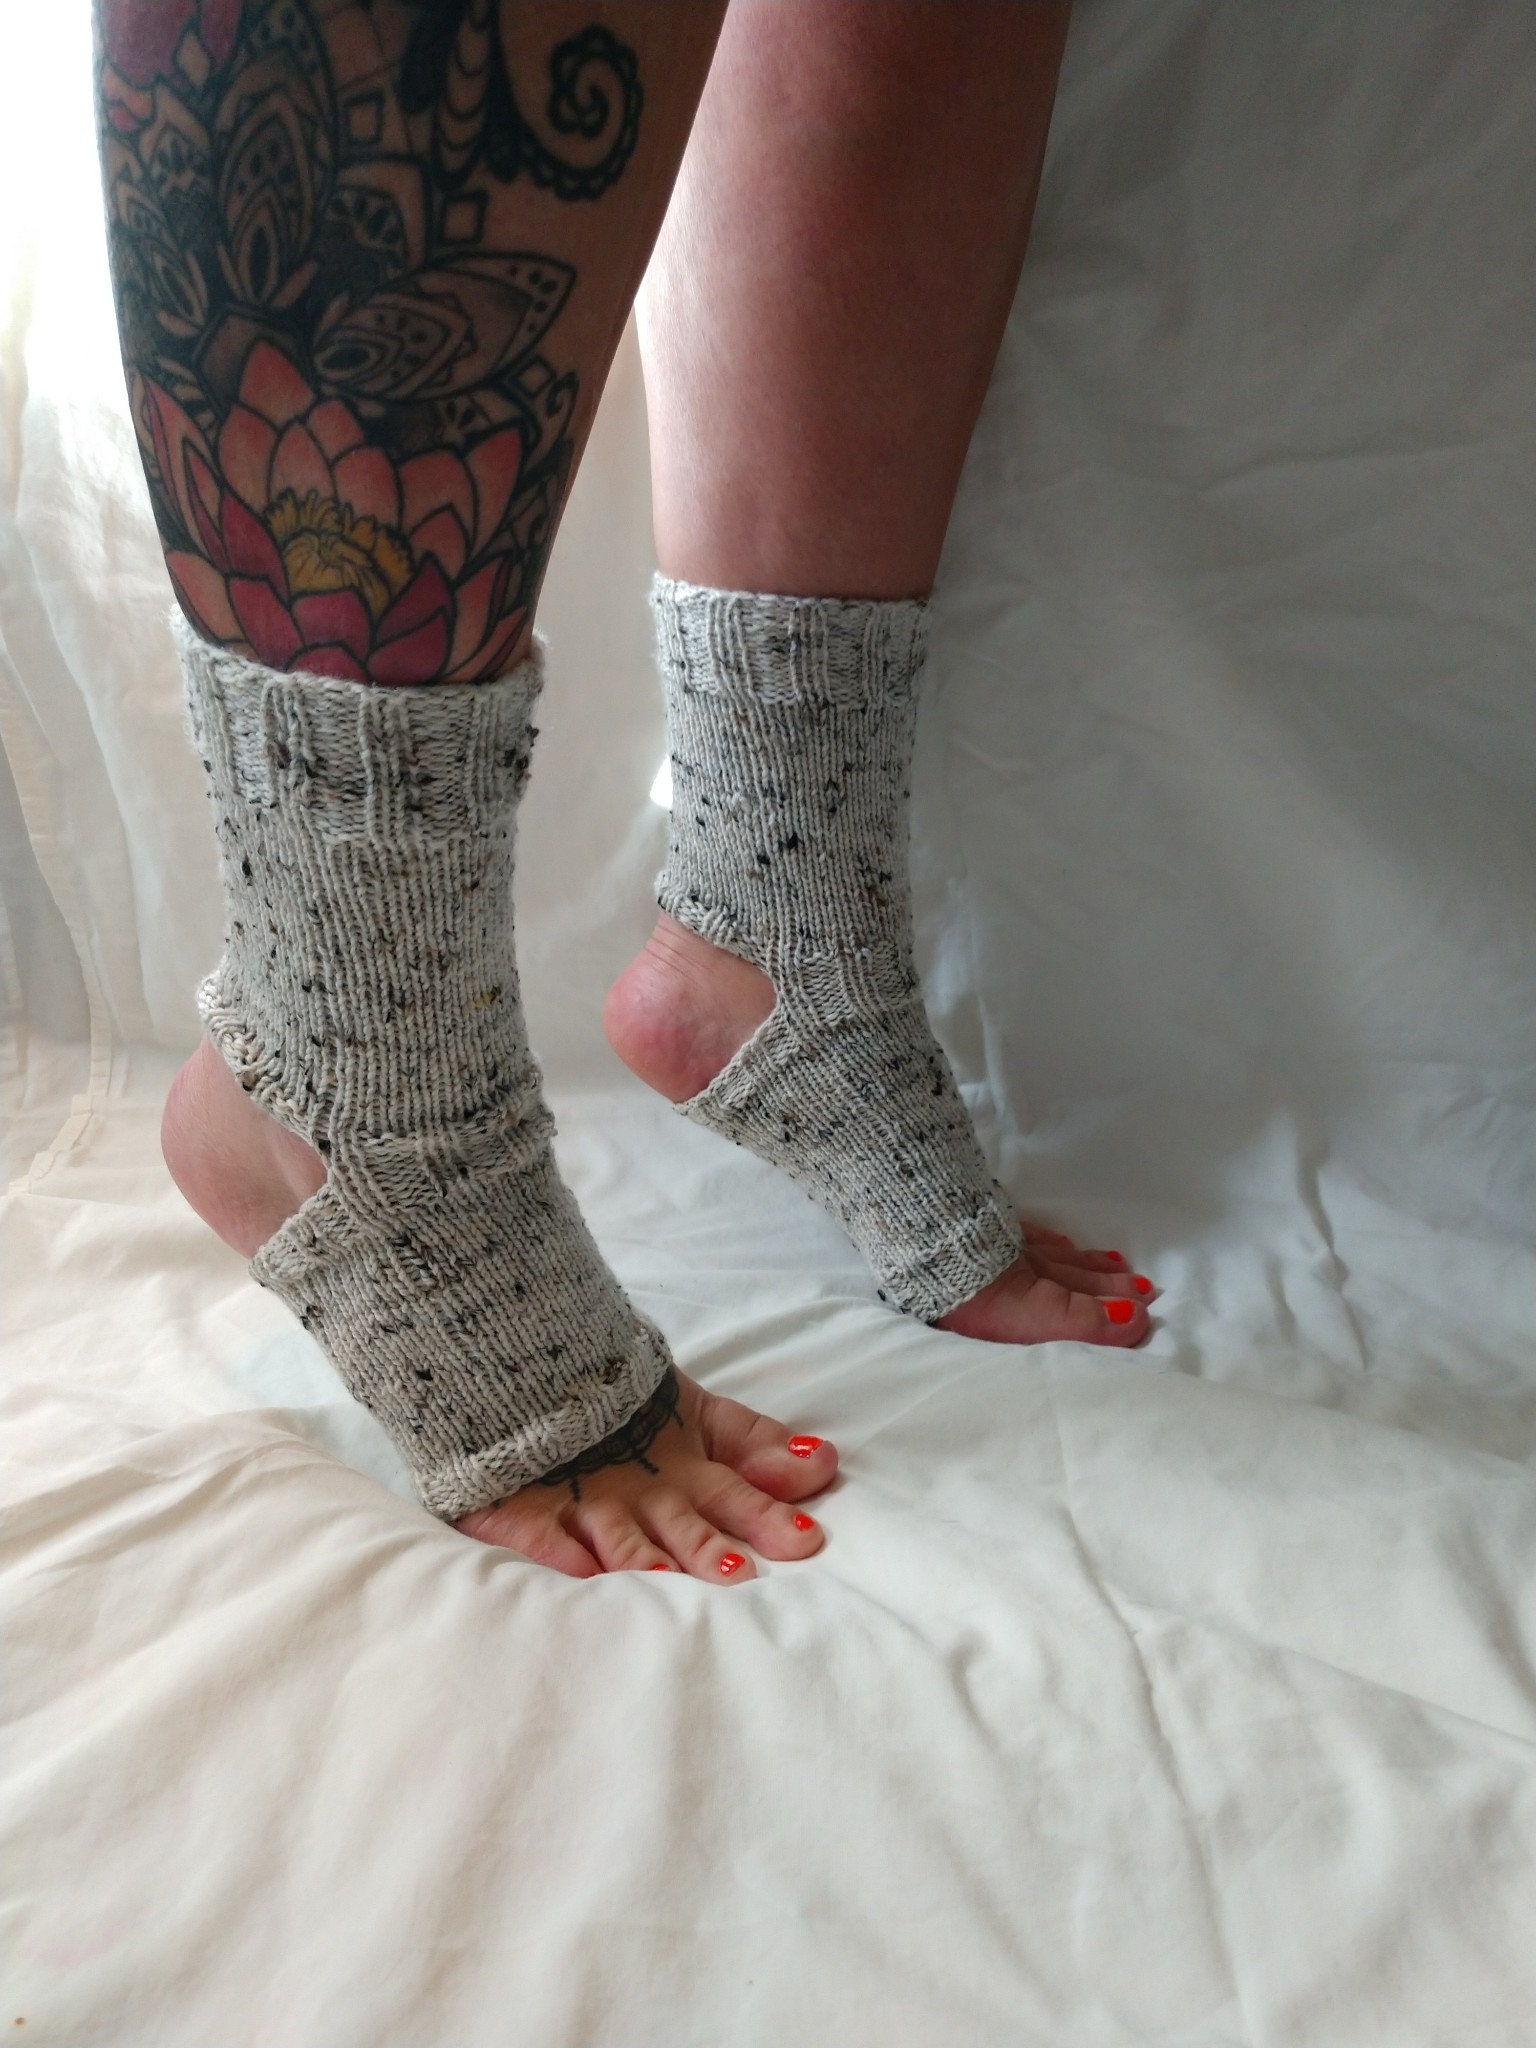 Women Men Multicolor Yoga Socks Flip Flop Socks Yoga Gift Athletic Socks  Dance Socks Grip Socks Pilates Socks Toeless Socks 